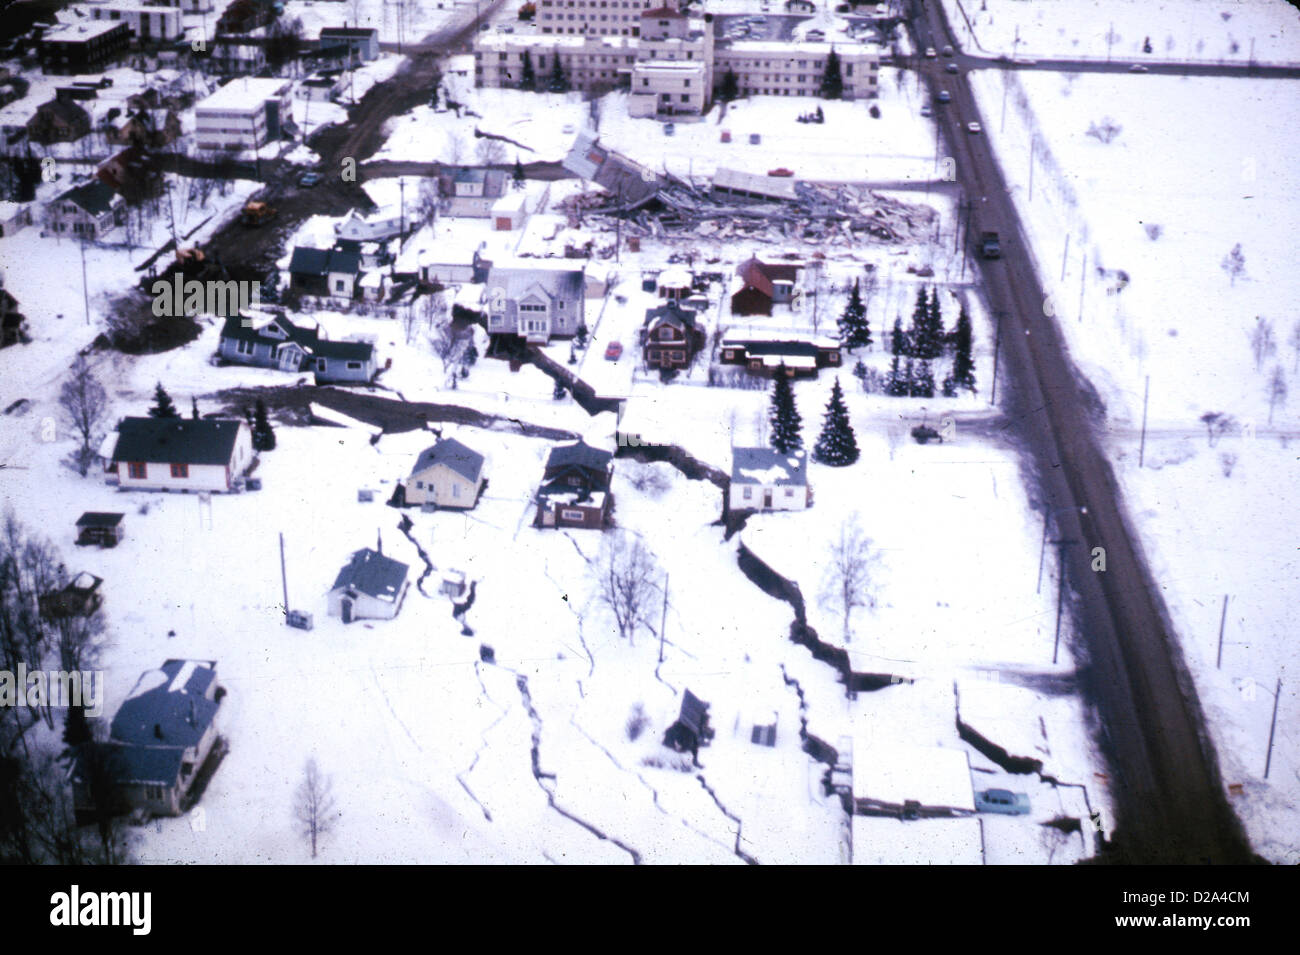 Terremoto de Alaska el 27 de marzo de 1964, el hundimiento de la canaleta (o Graben) formó la cabeza L Street derrumbe en Anchorage durante el terremoto Foto de stock